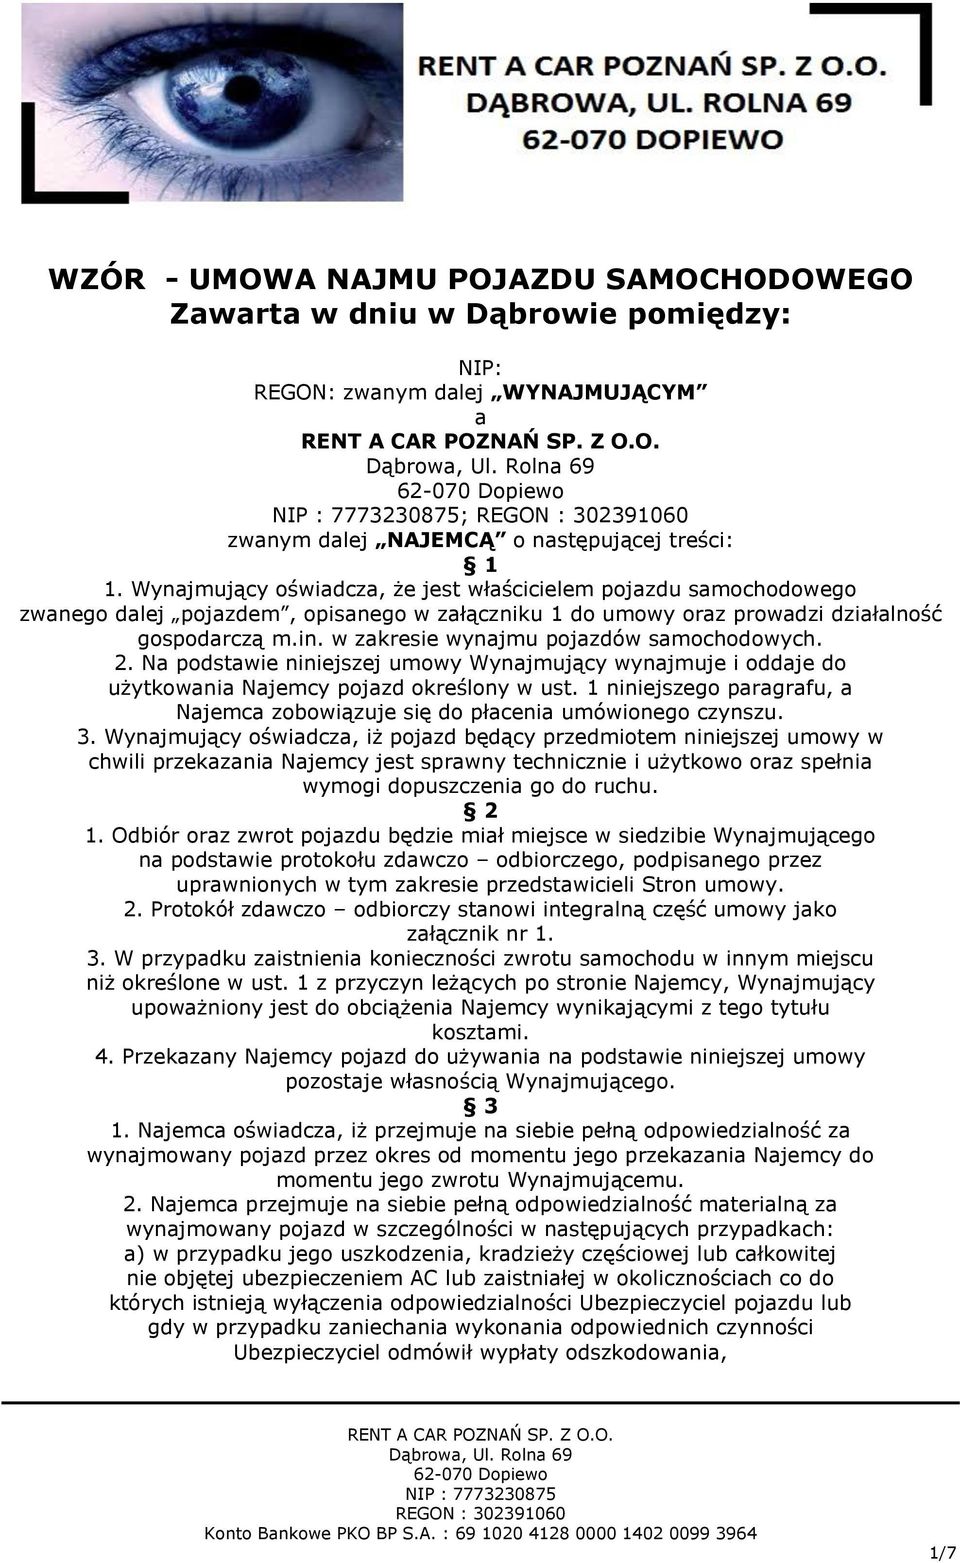 WZÓR - UMOWA NAJMU POJAZDU SAMOCHODOWEGO Zawarta w dniu w Dąbrowie  pomiędzy: - PDF Free Download